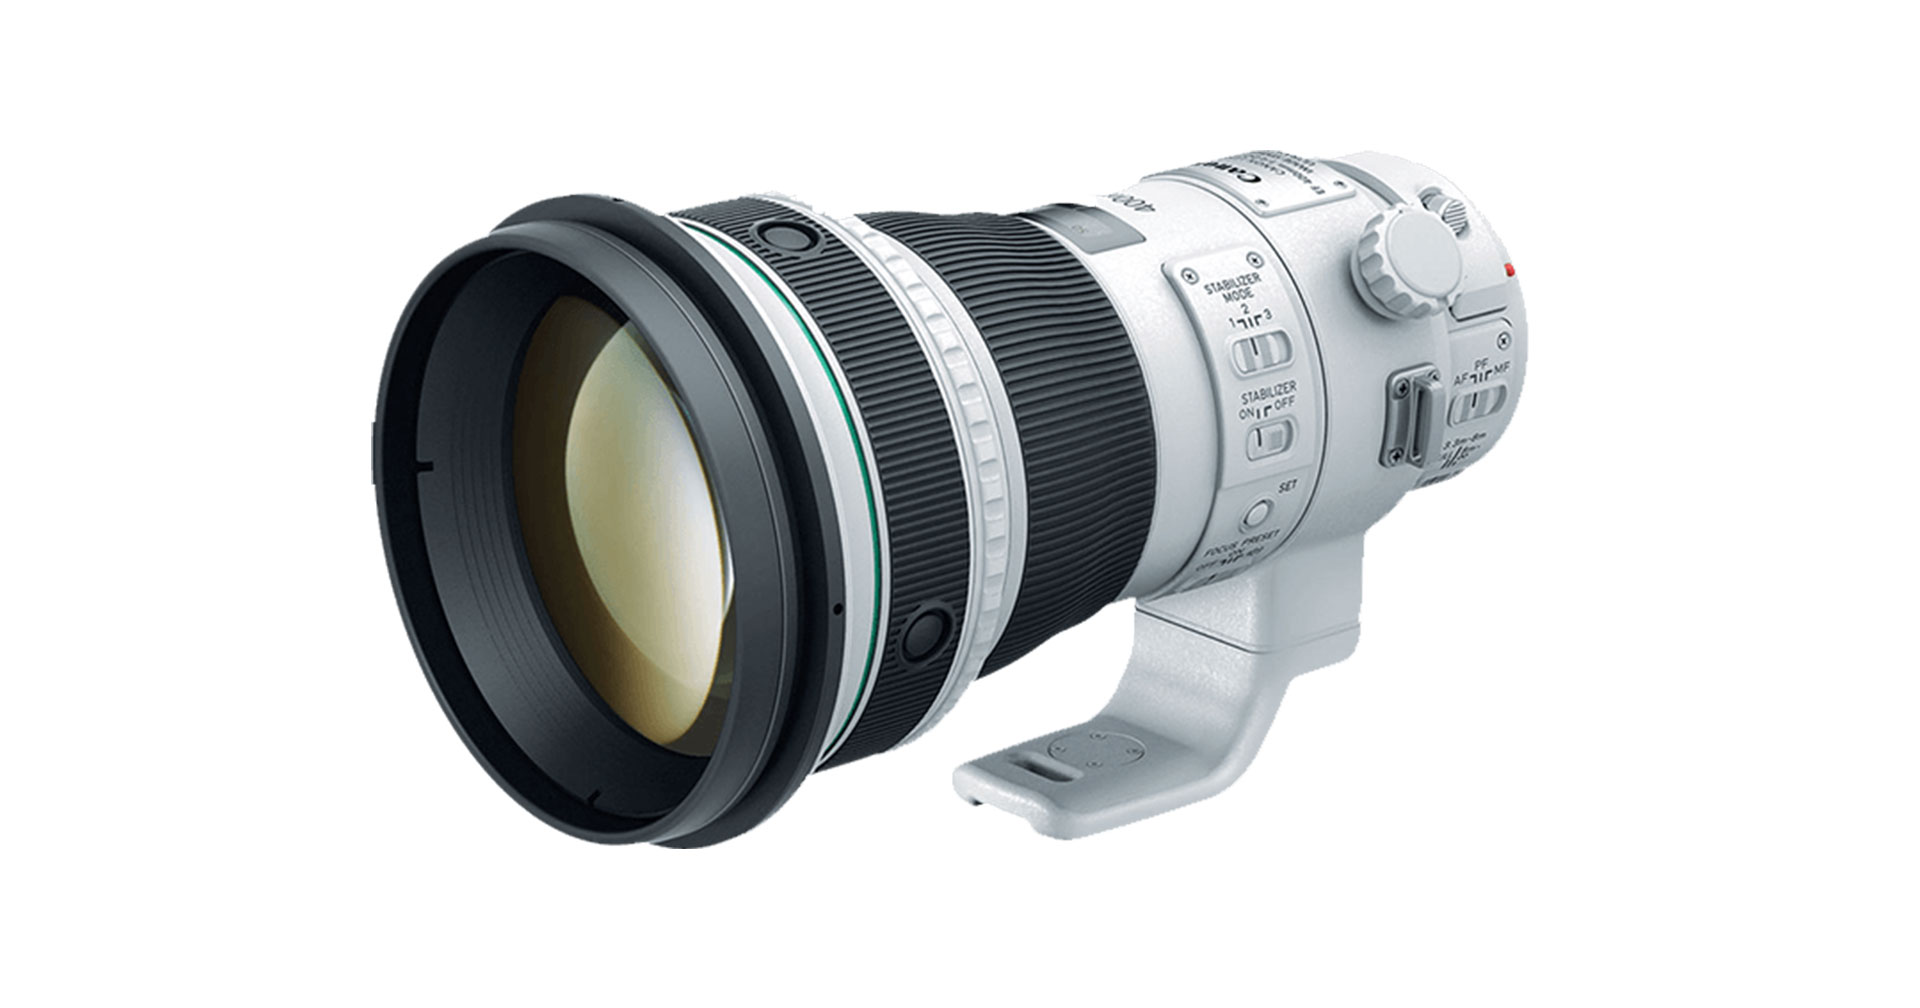 ลือ Canon เตรียมเปิดตัวเลนส์ RF 400mm f/4 DO IS USM และ RF 200-500mm f/4L IS USM ปีหน้า!